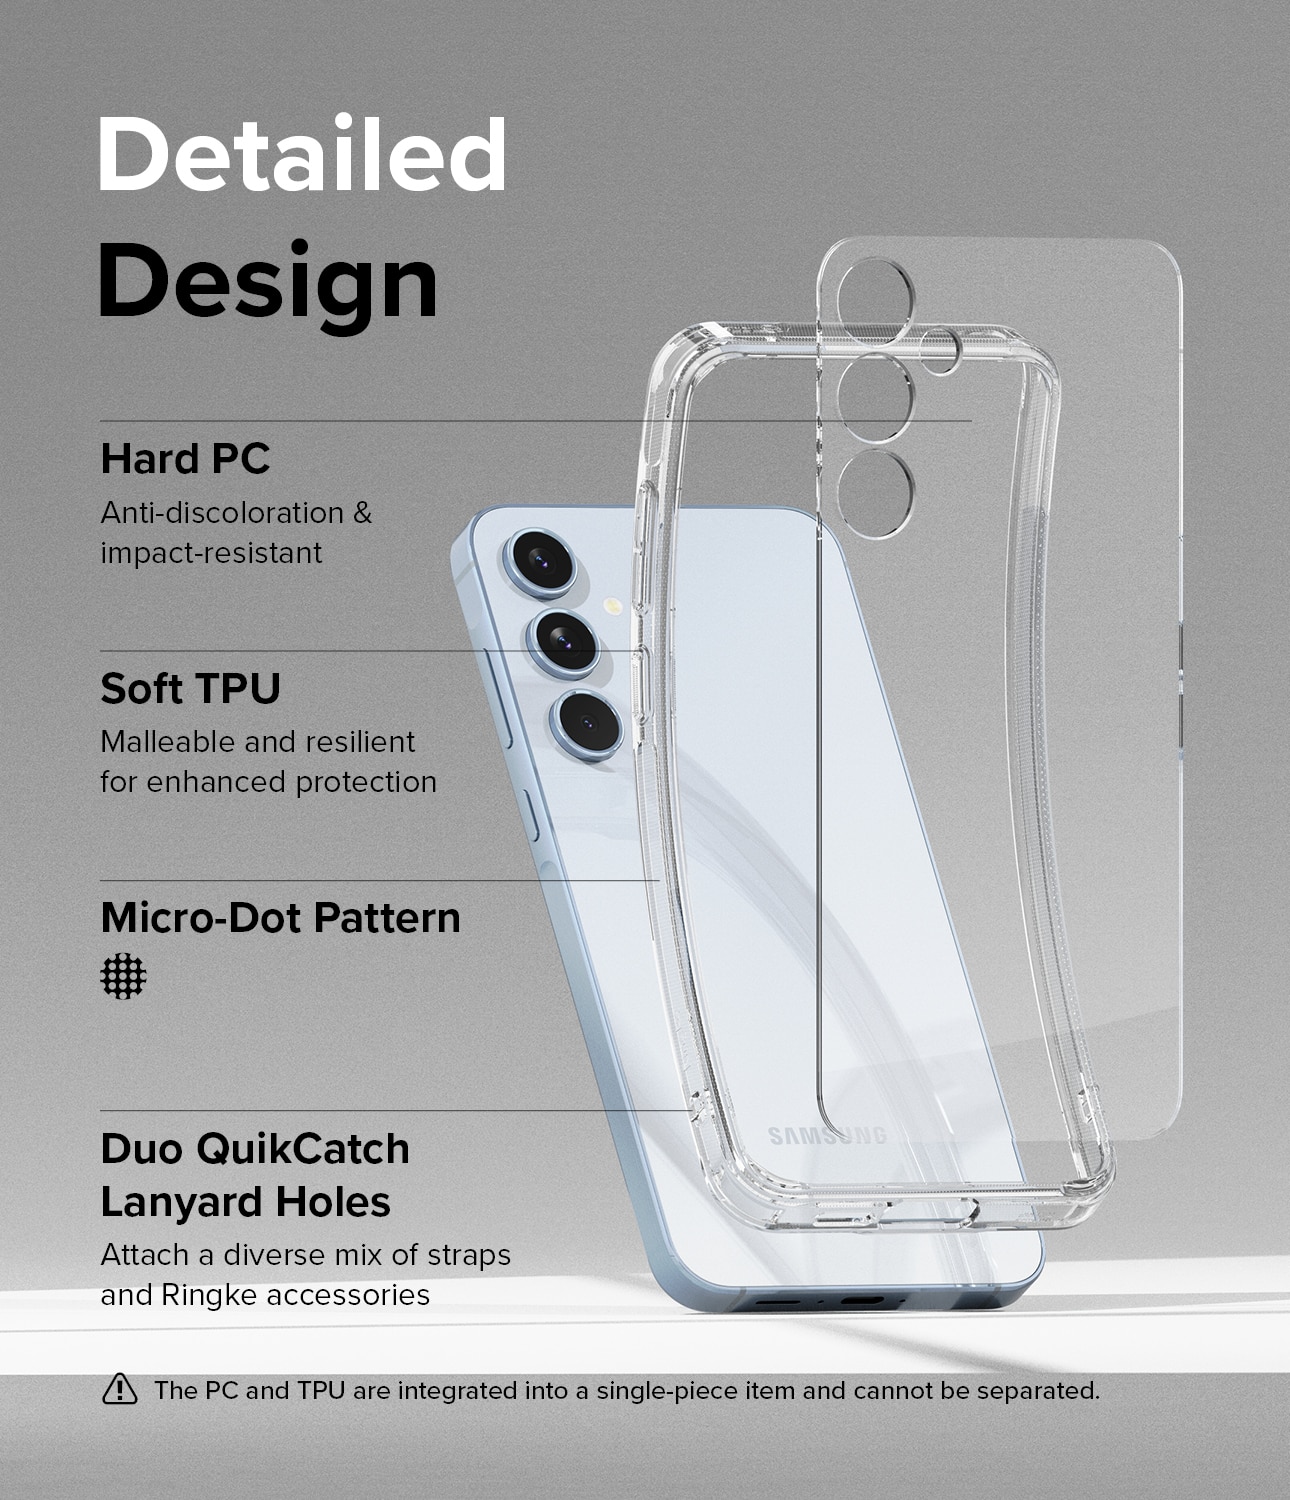 Samsung Galaxy A55 Fusion skal, genomskinlig